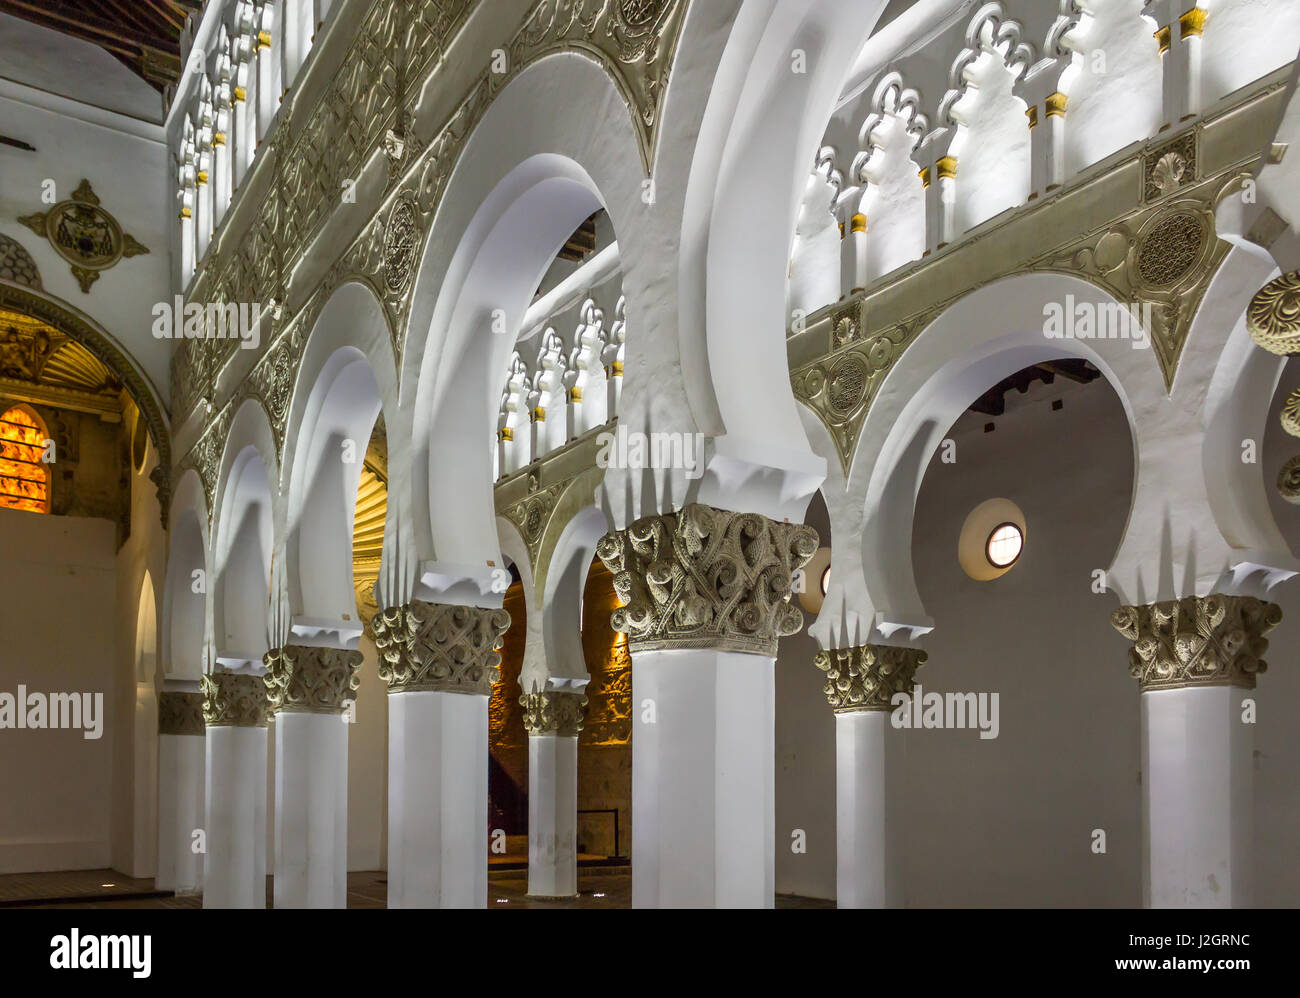 Interior of Santa Maria la Blanca Synagogue in Toledo, Spain. Stock Photo